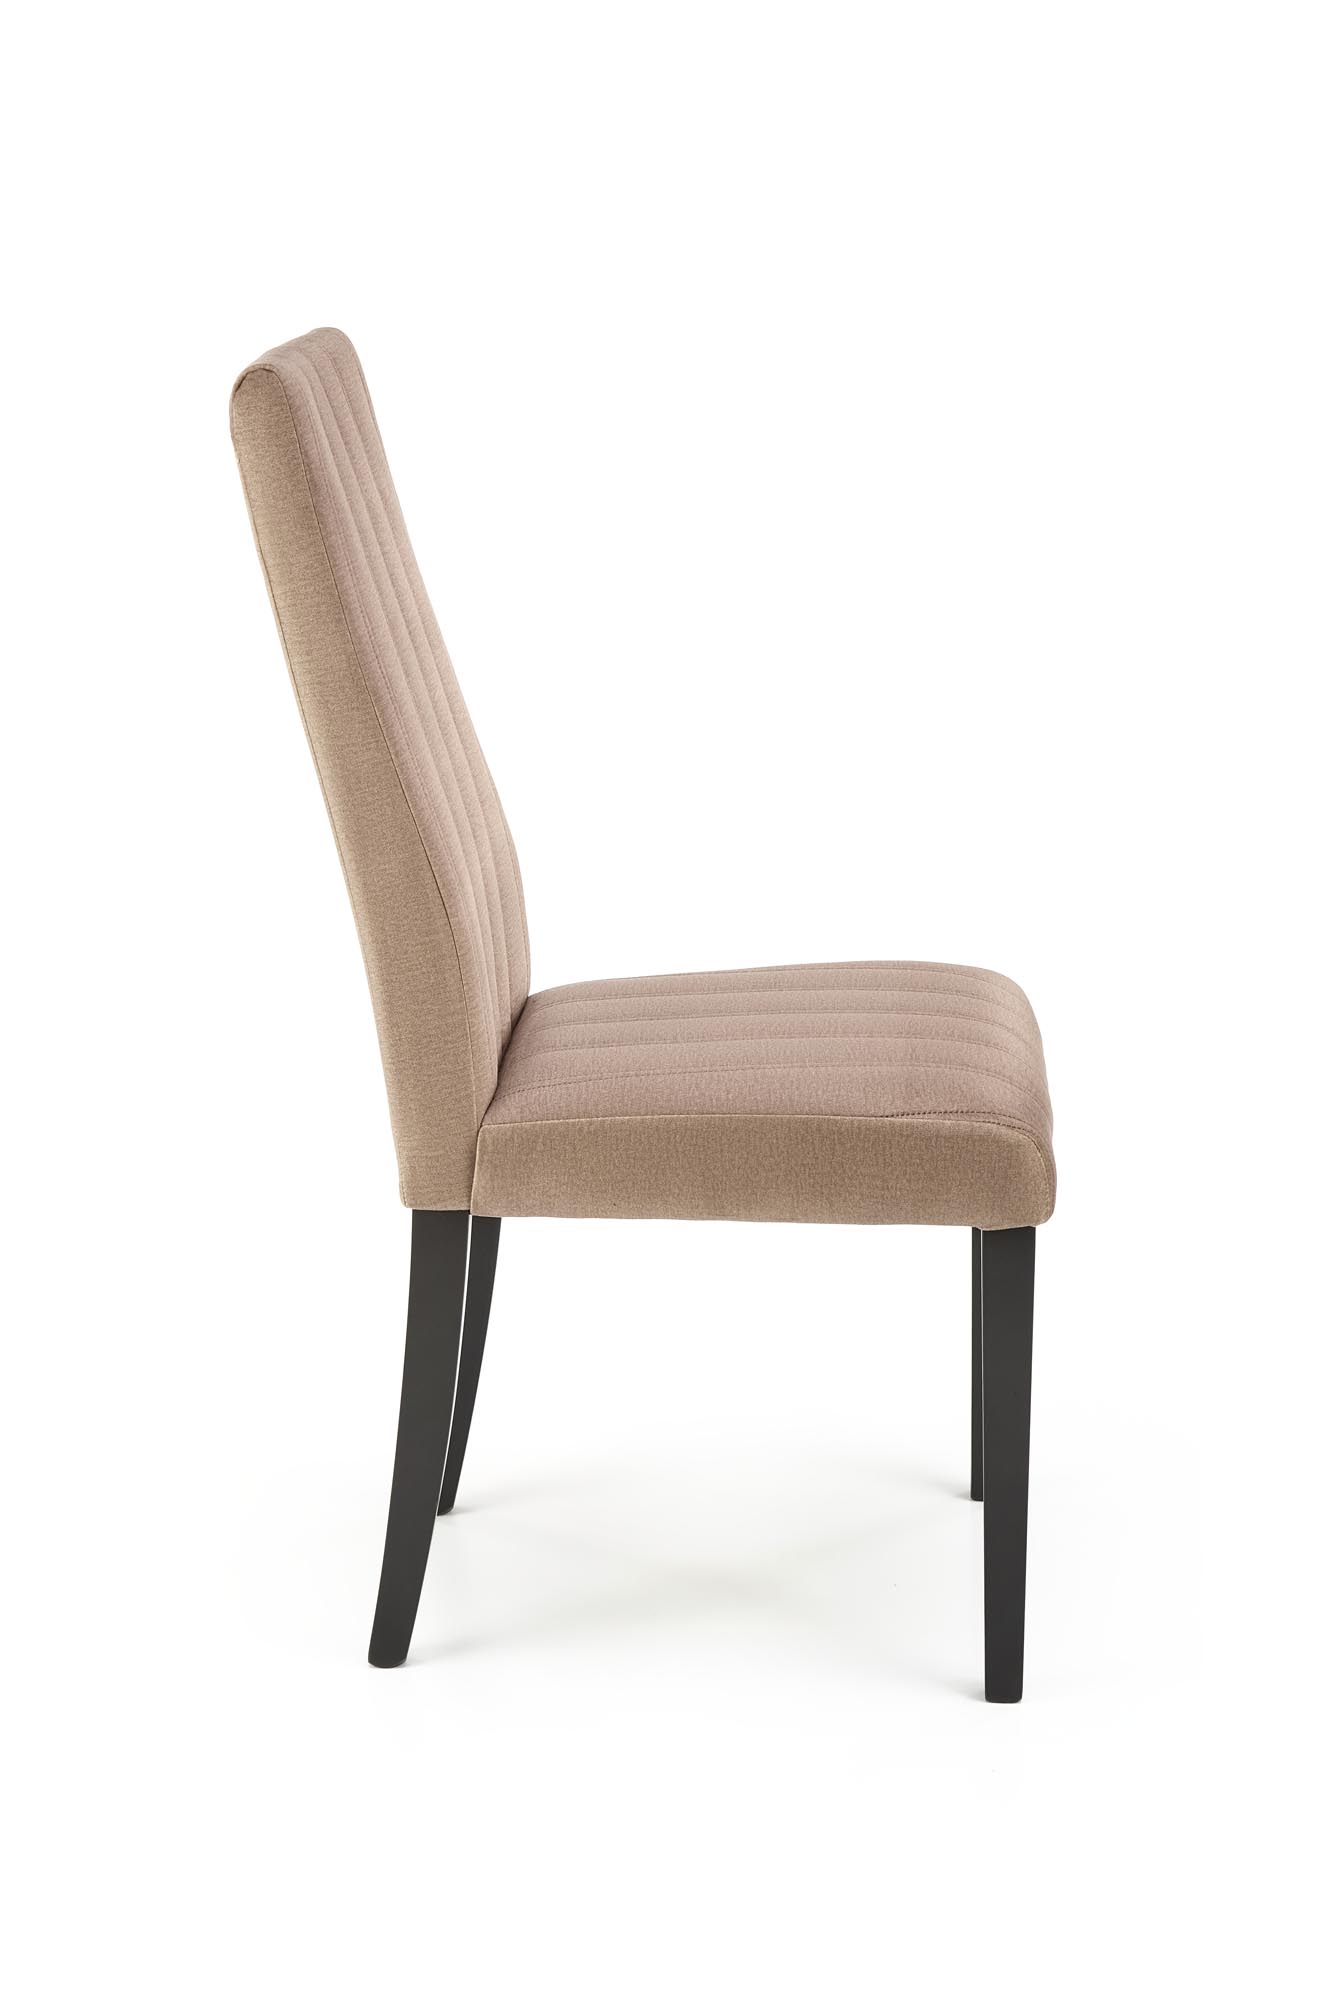 Krzesło tapicerowane Diego 2 - czarny / beż krzesło tapicerowane diego 2 - czarny / beż